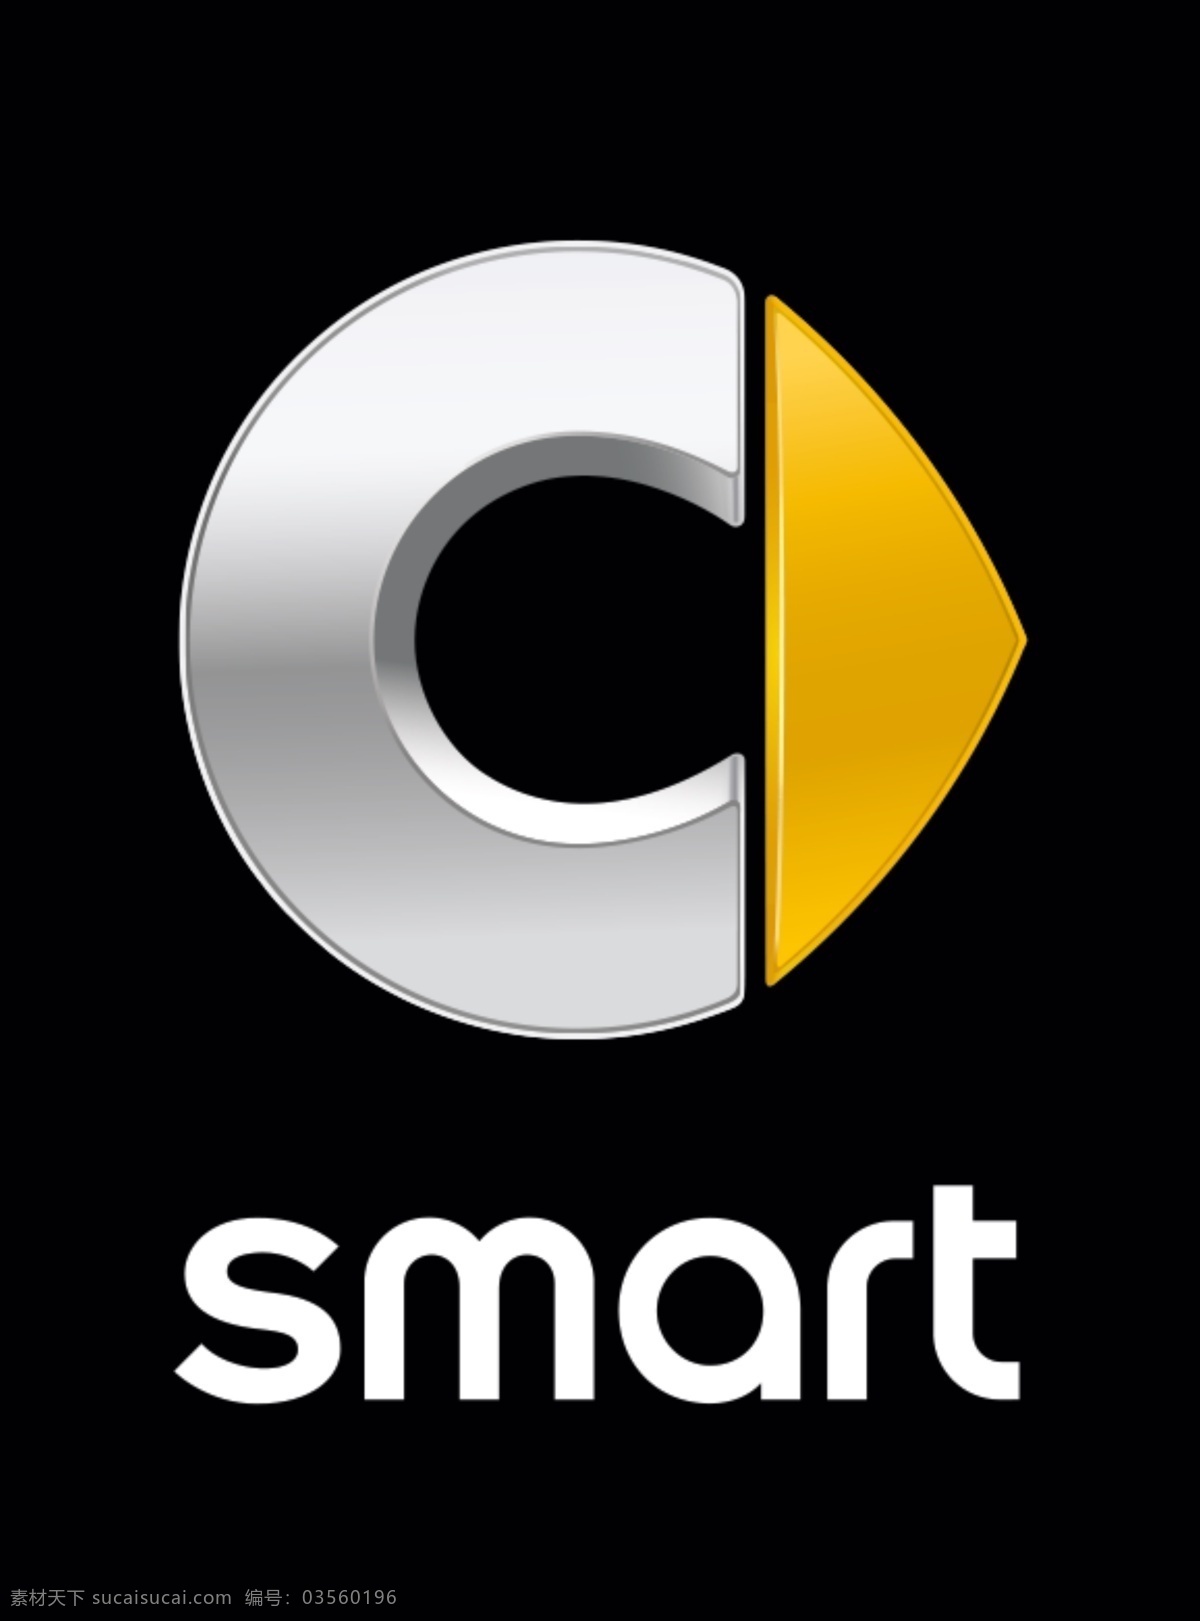 奔驰 smart logo图片 logo 标志 汽车 现代科技 交通工具